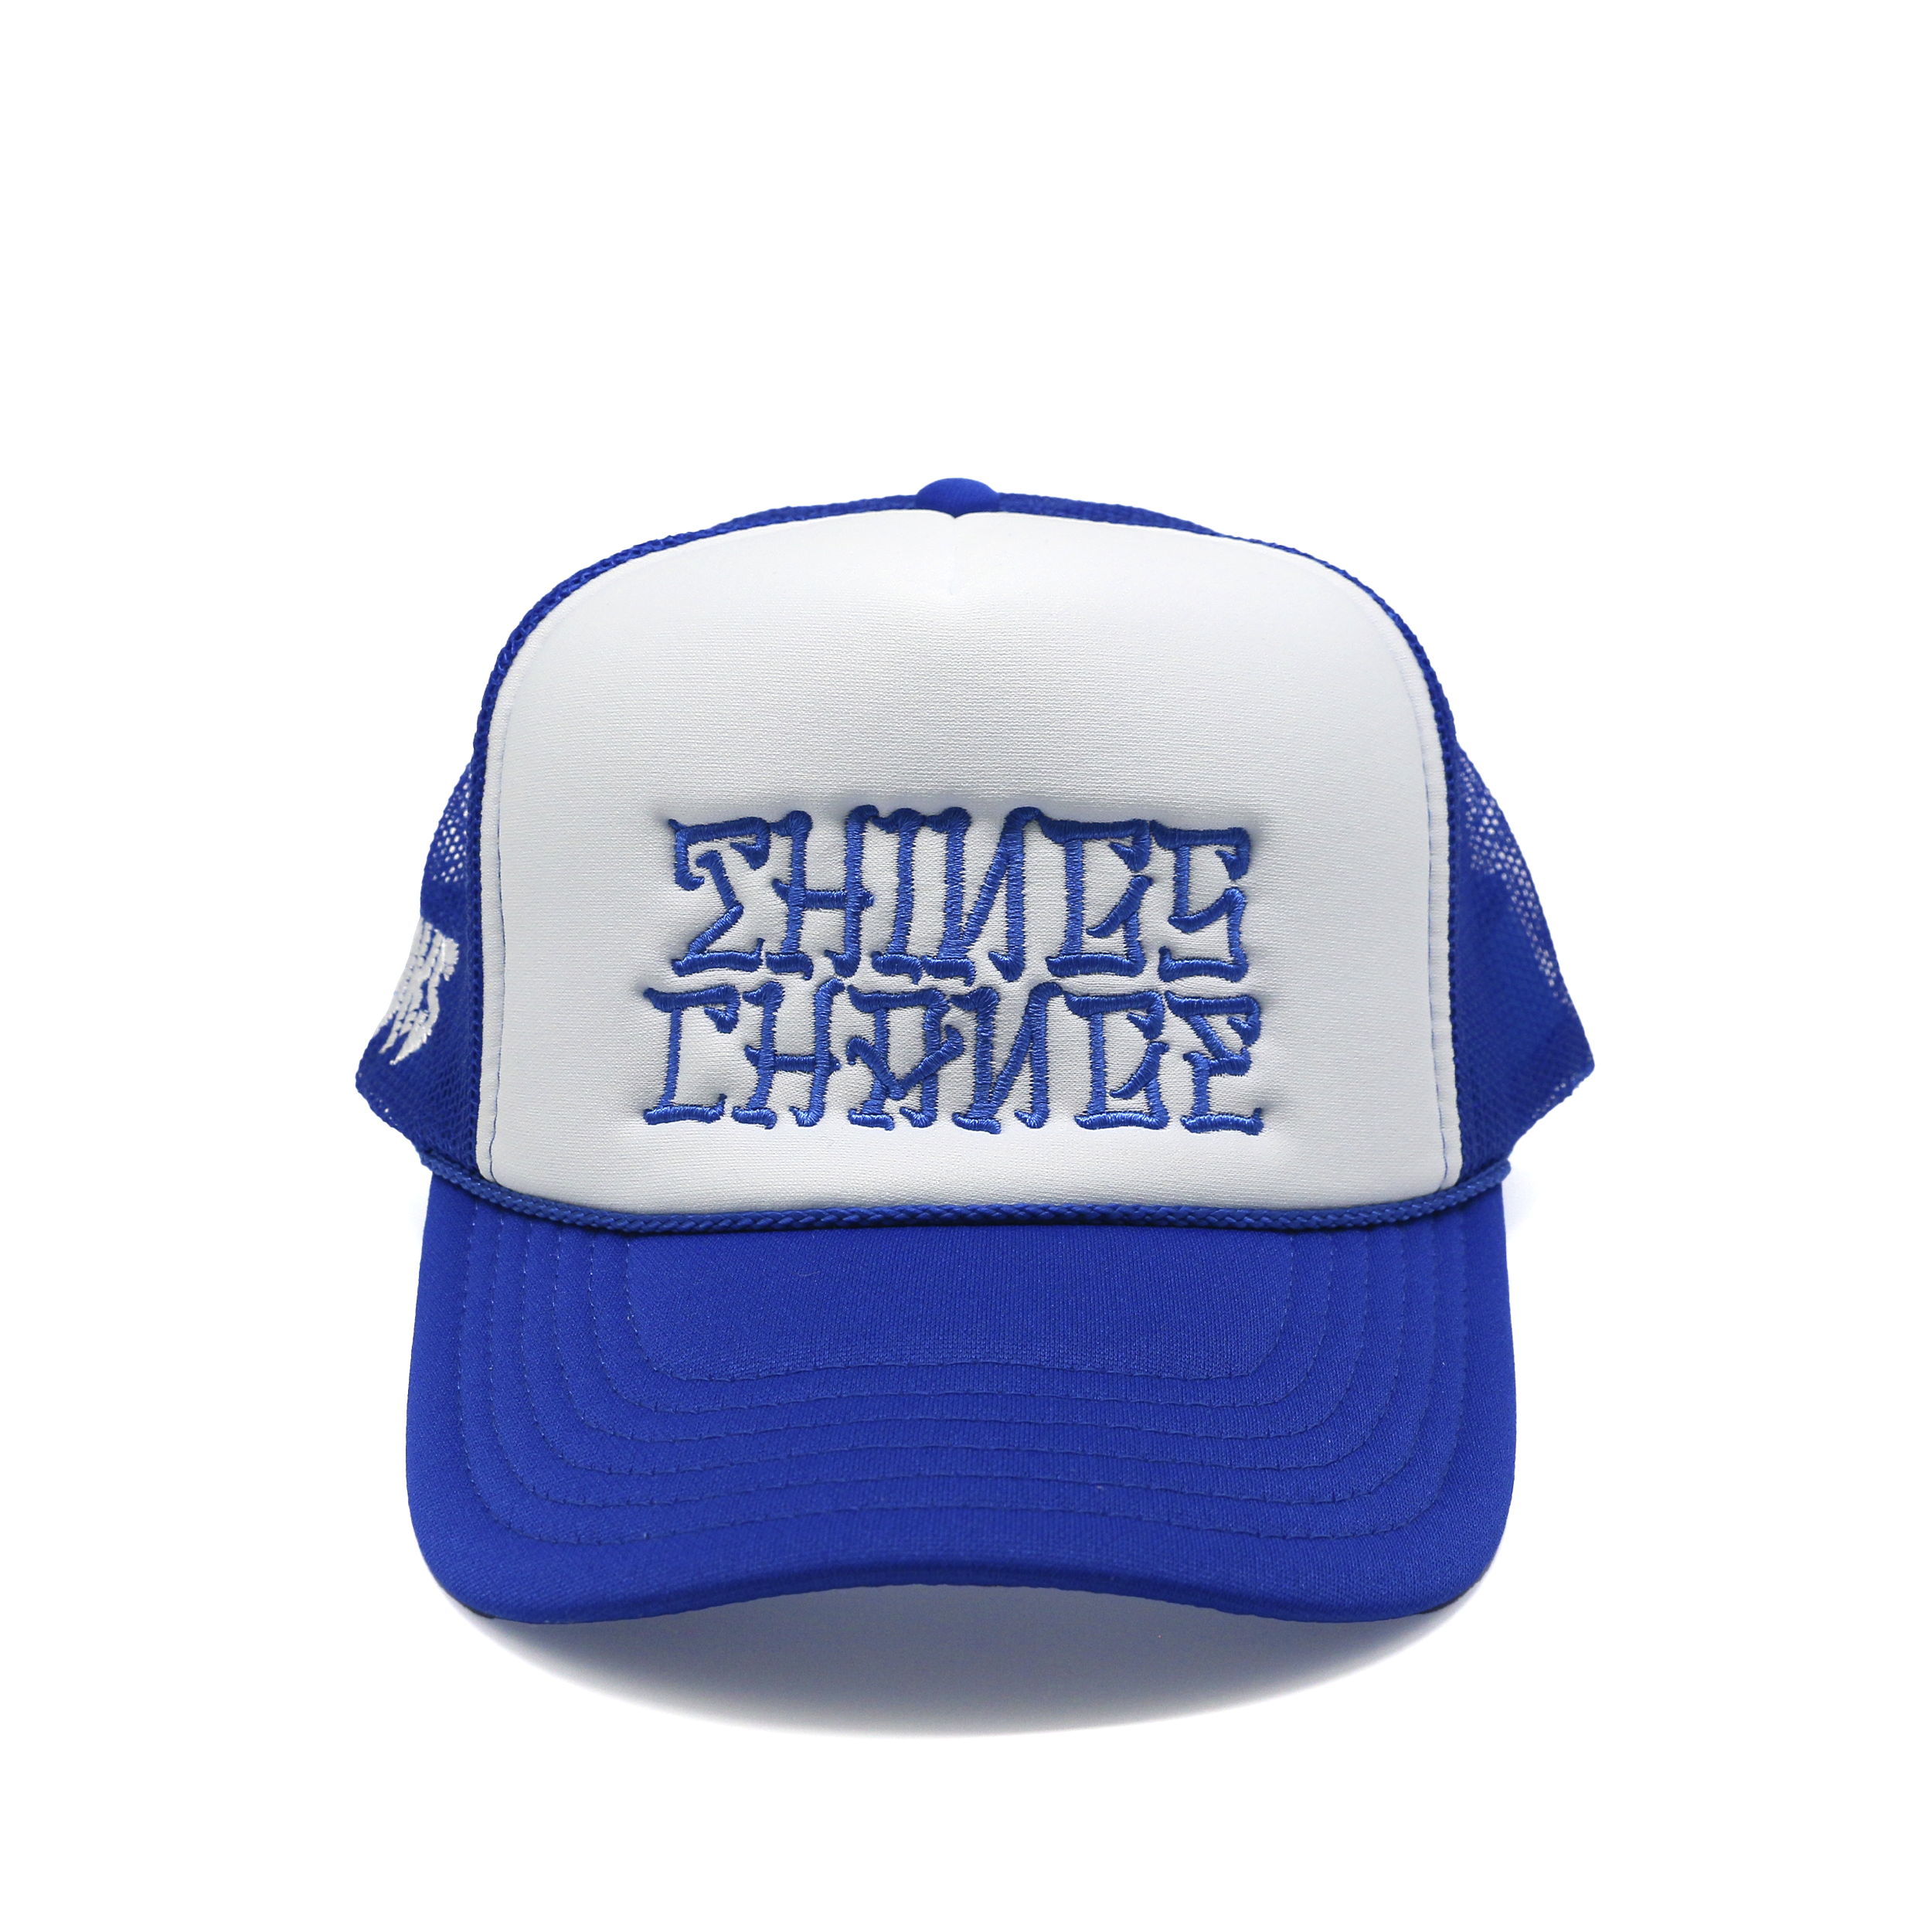 DKS "Things Change" Trucker Hat (Blue/White/Blue)